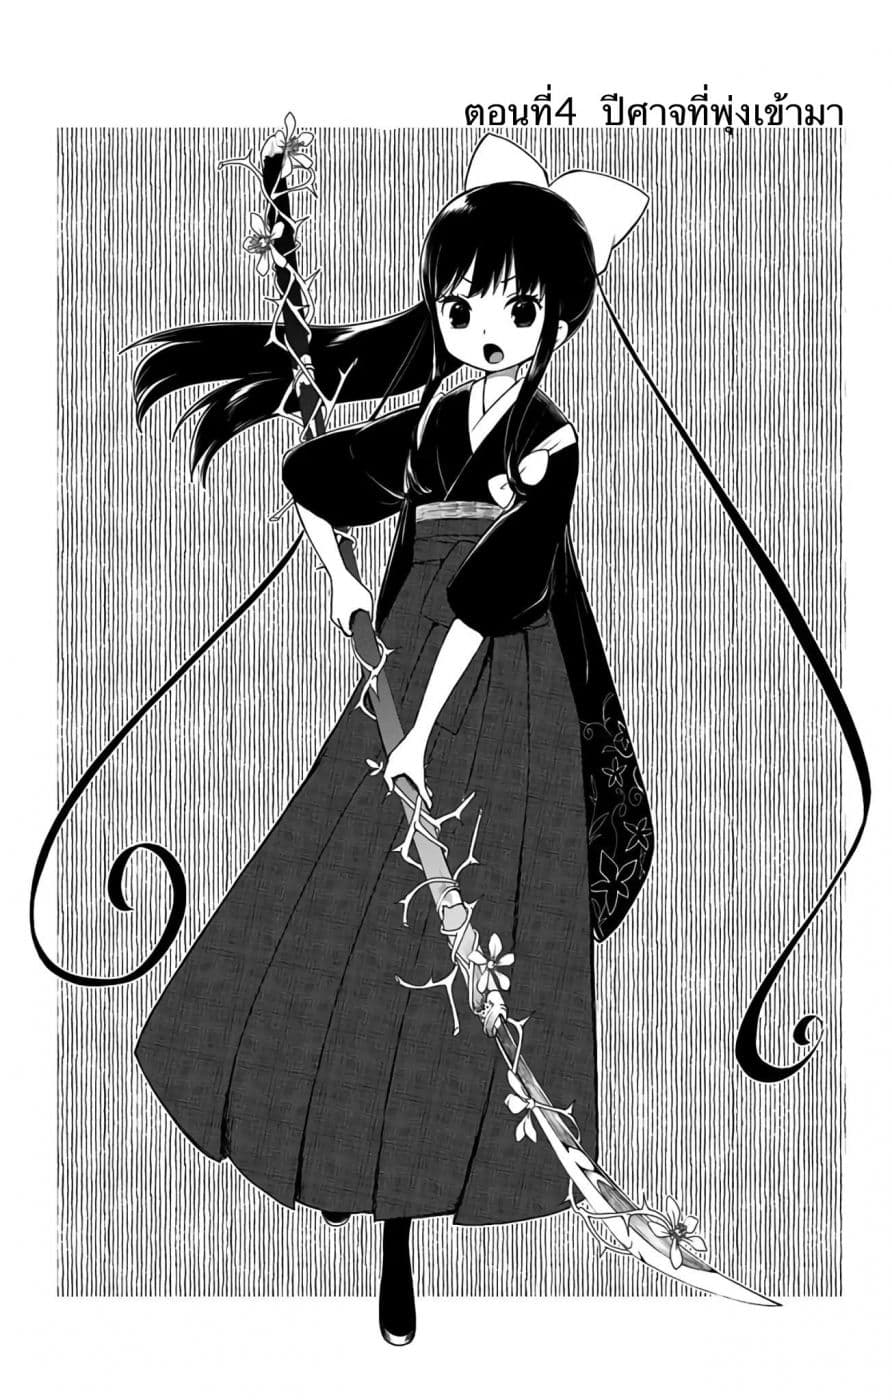 Shouwa Otome Otogibanashi เรื่องเล่าของสาวน้อย ยุคโชวะ ตอนที่ 4 (3)